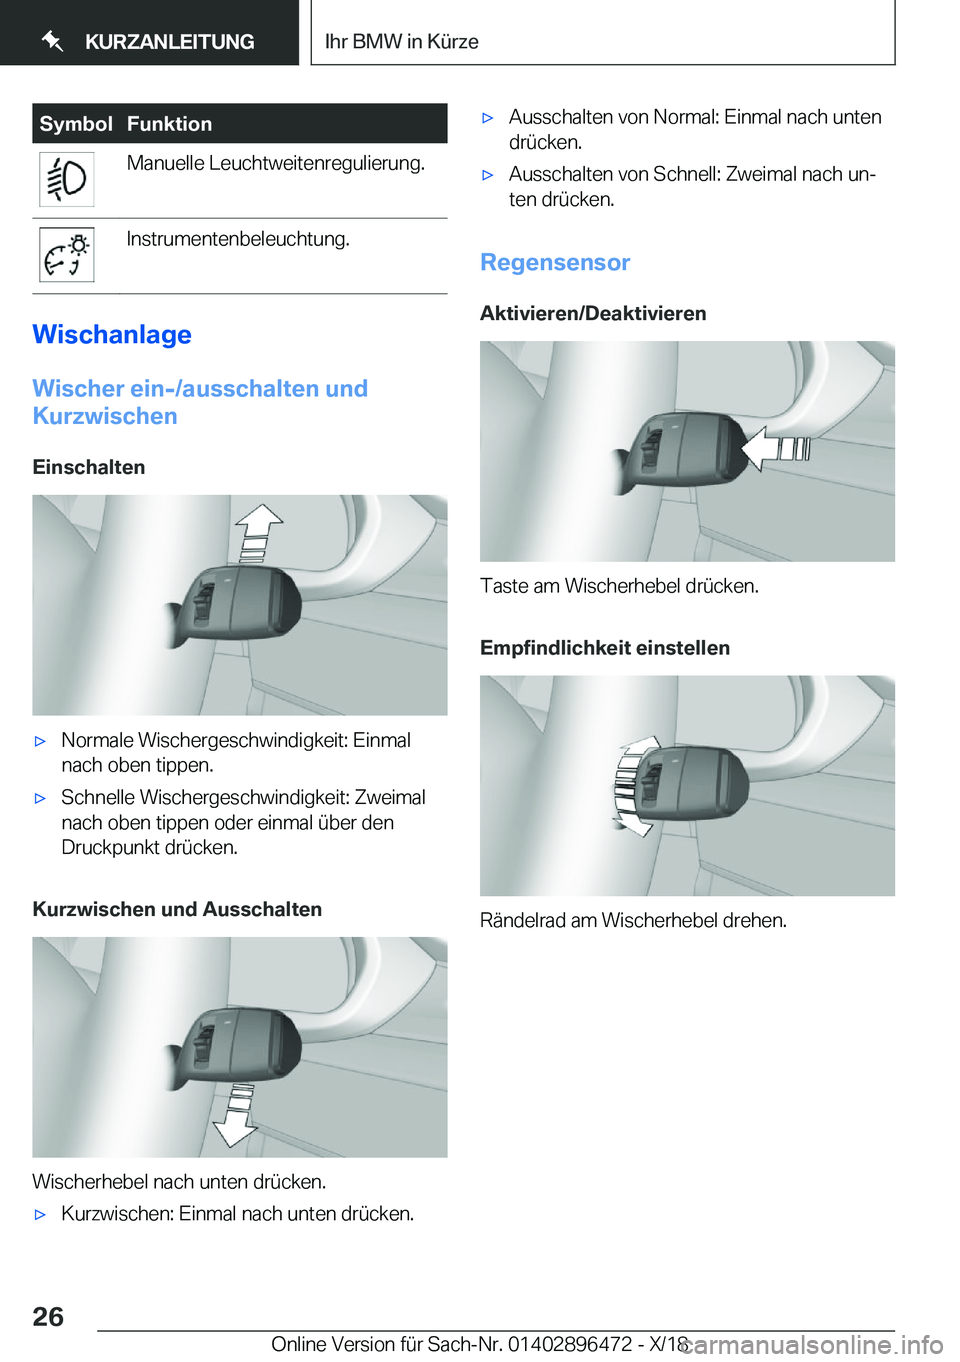 BMW X1 2019  Betriebsanleitungen (in German) �S�y�m�b�o�l�F�u�n�k�t�i�o�n�M�a�n�u�e�l�l�e��L�e�u�c�h�t�w�e�i�t�e�n�r�e�g�u�l�i�e�r�u�n�g�.�I�n�s�t�r�u�m�e�n�t�e�n�b�e�l�e�u�c�h�t�u�n�g�.
�W�i�s�c�h�a�n�l�a�g�e
�W�i�s�c�h�e�r��e�i�n�-�/�a�u�s�s